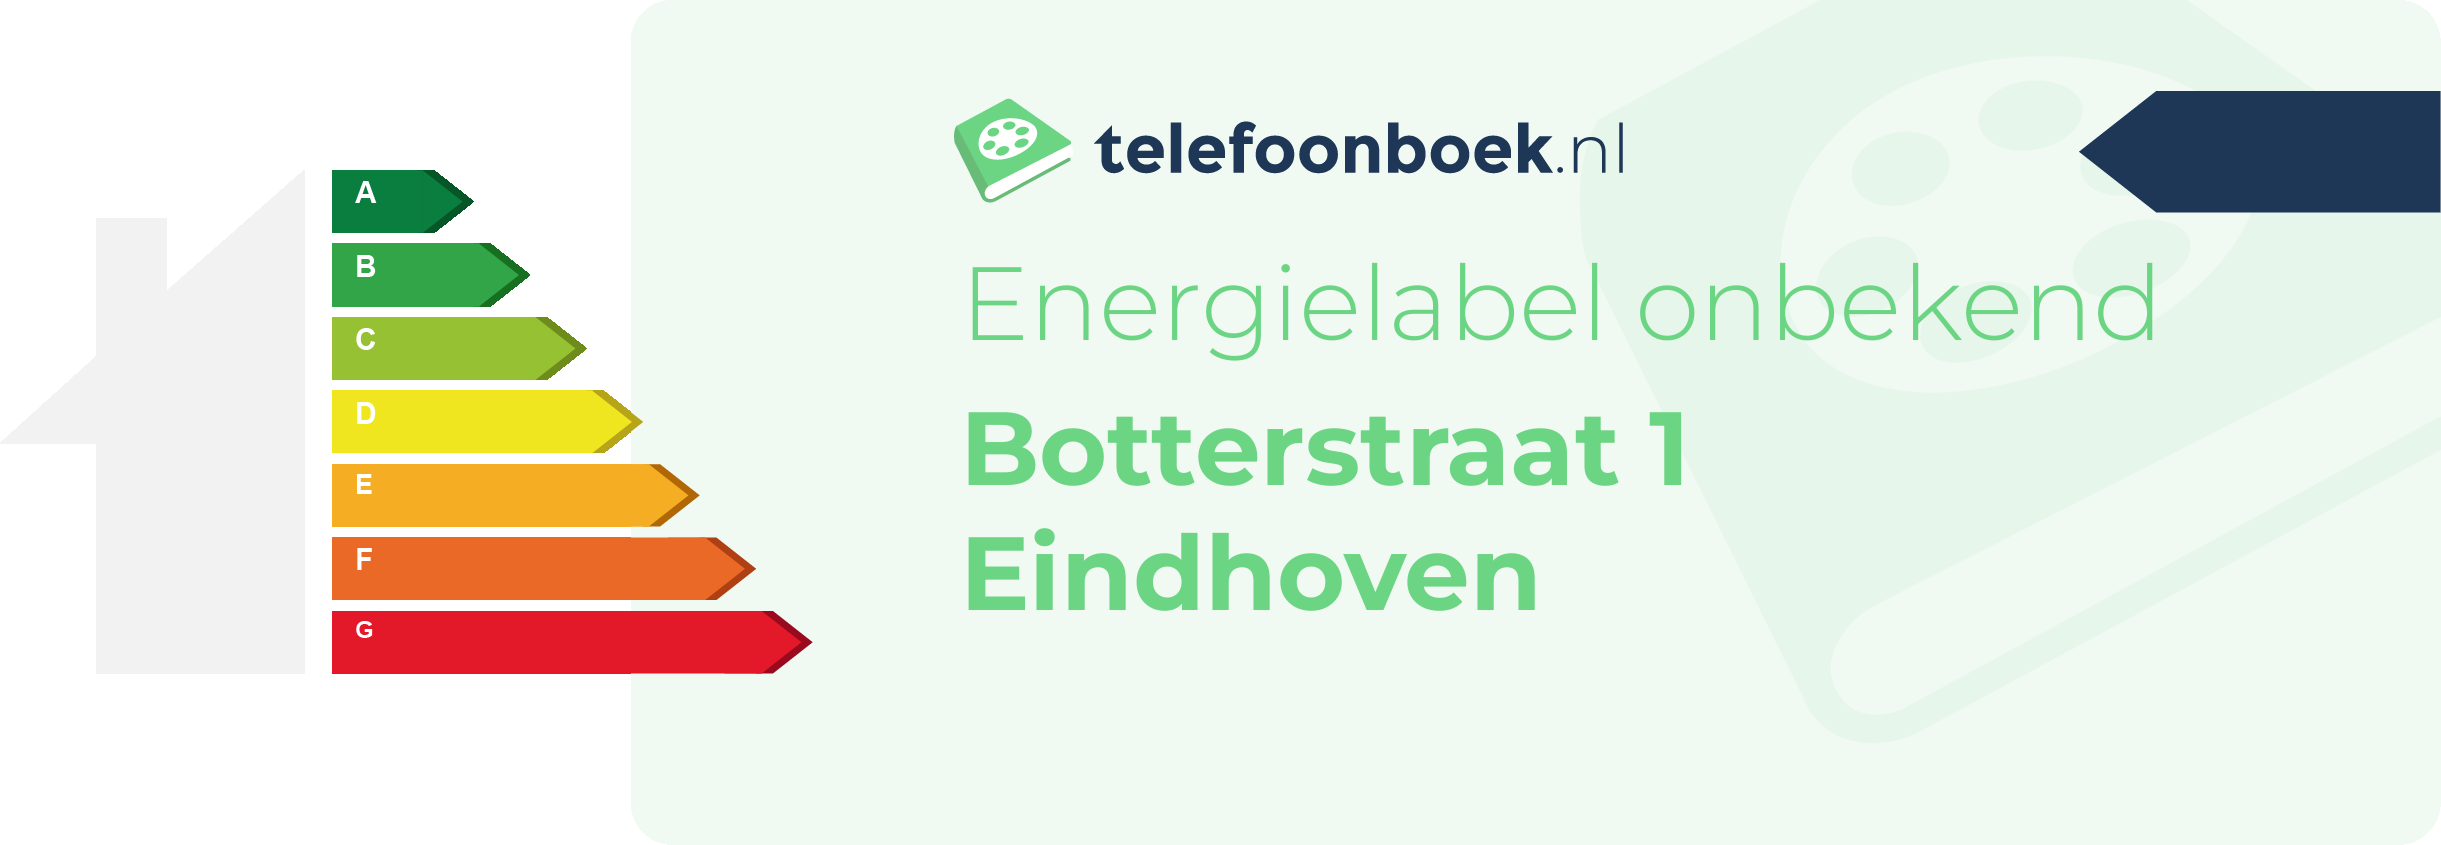 Energielabel Botterstraat 1 Eindhoven